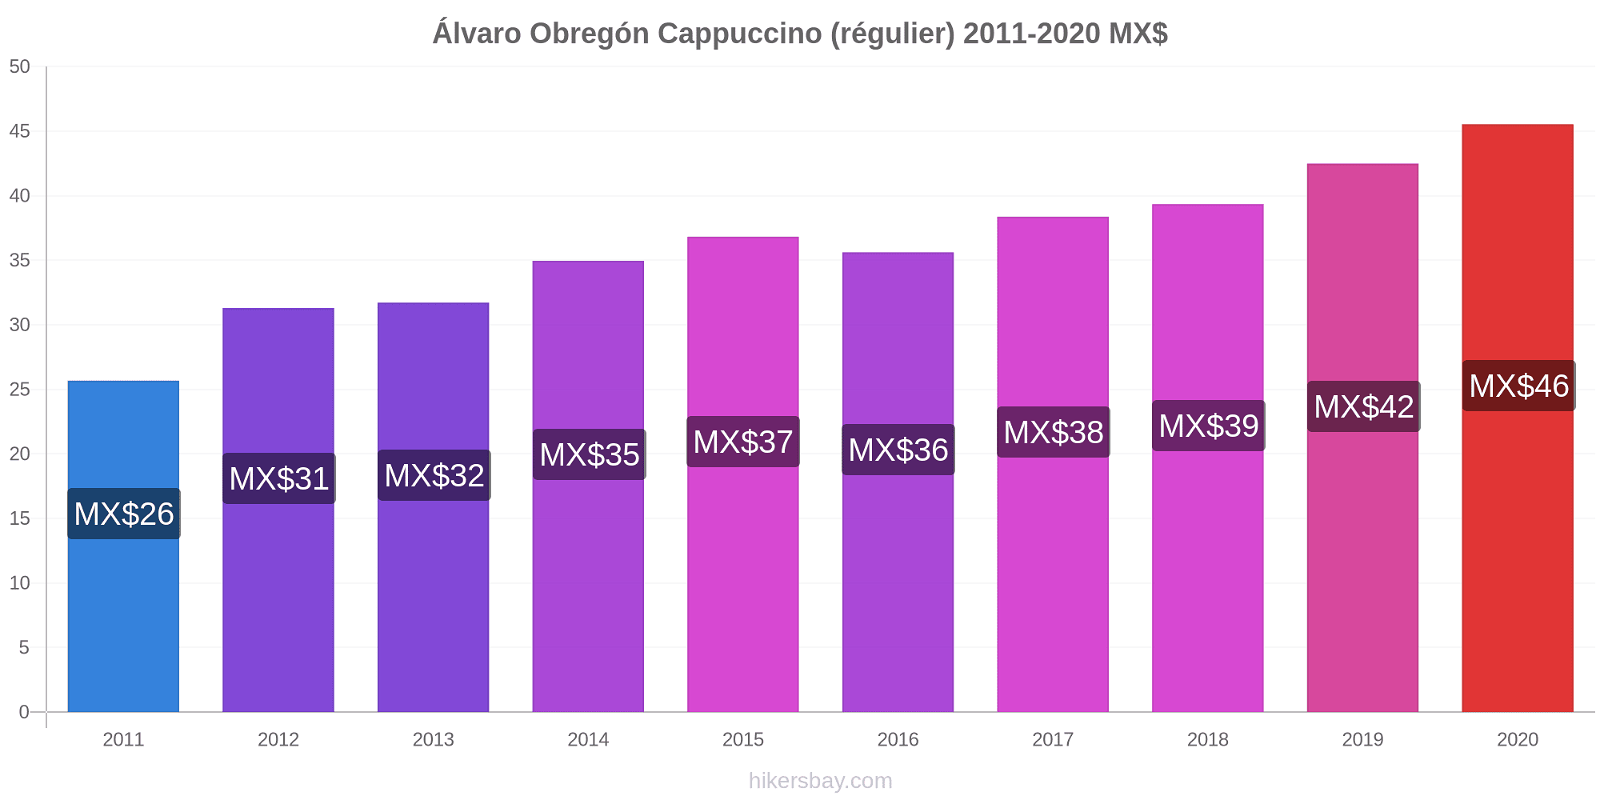 Álvaro Obregón changements de prix Cappuccino (régulier) hikersbay.com